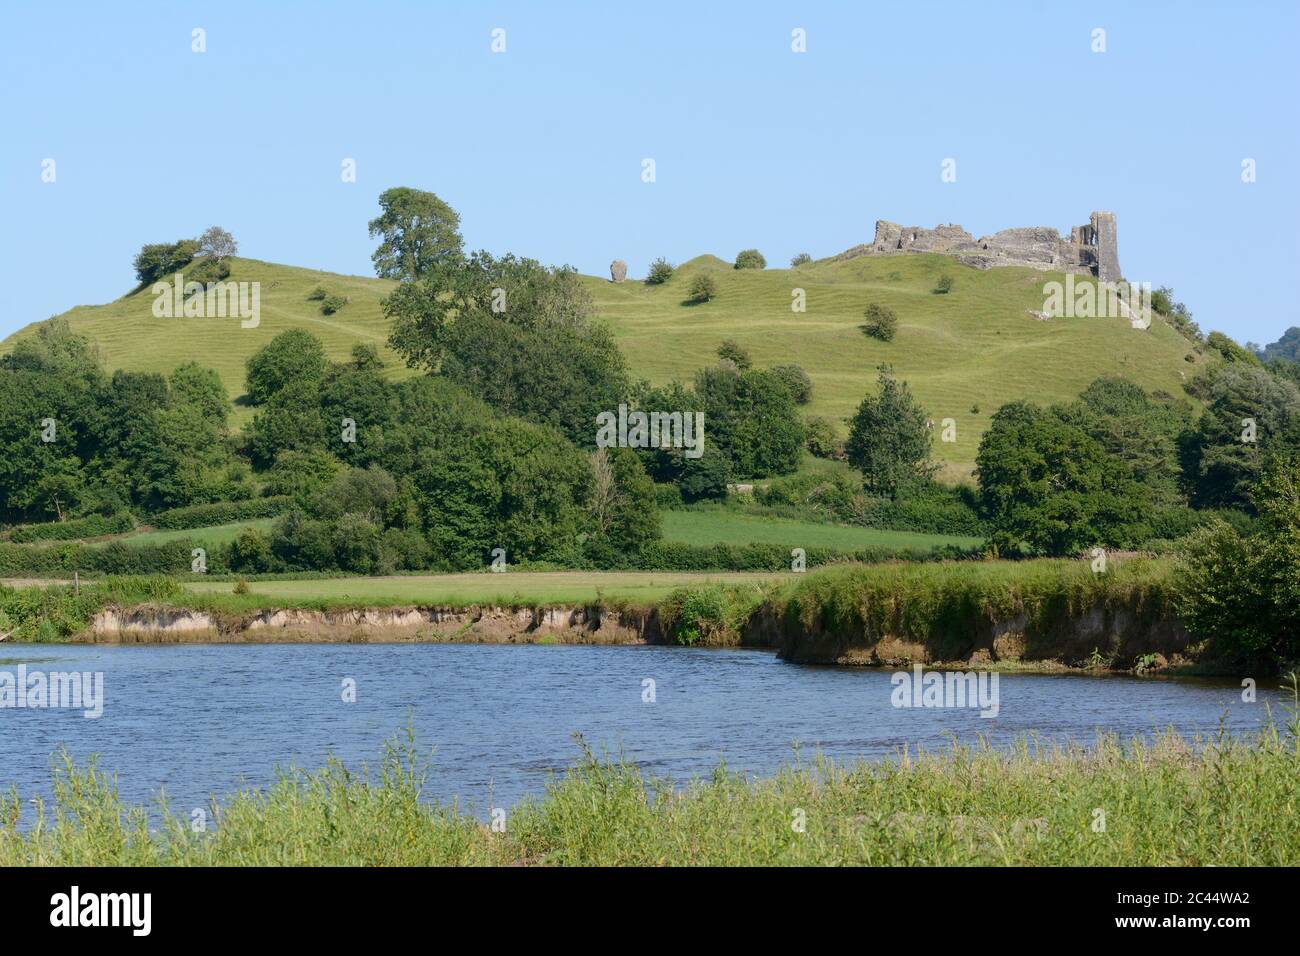 Le château de Dryslwyn se trouve sur une colline rocheuse surplombant la rivière Tywi et la vallée de Tywi Carmarthenshire Wales Cymru Royaume-Uni Banque D'Images